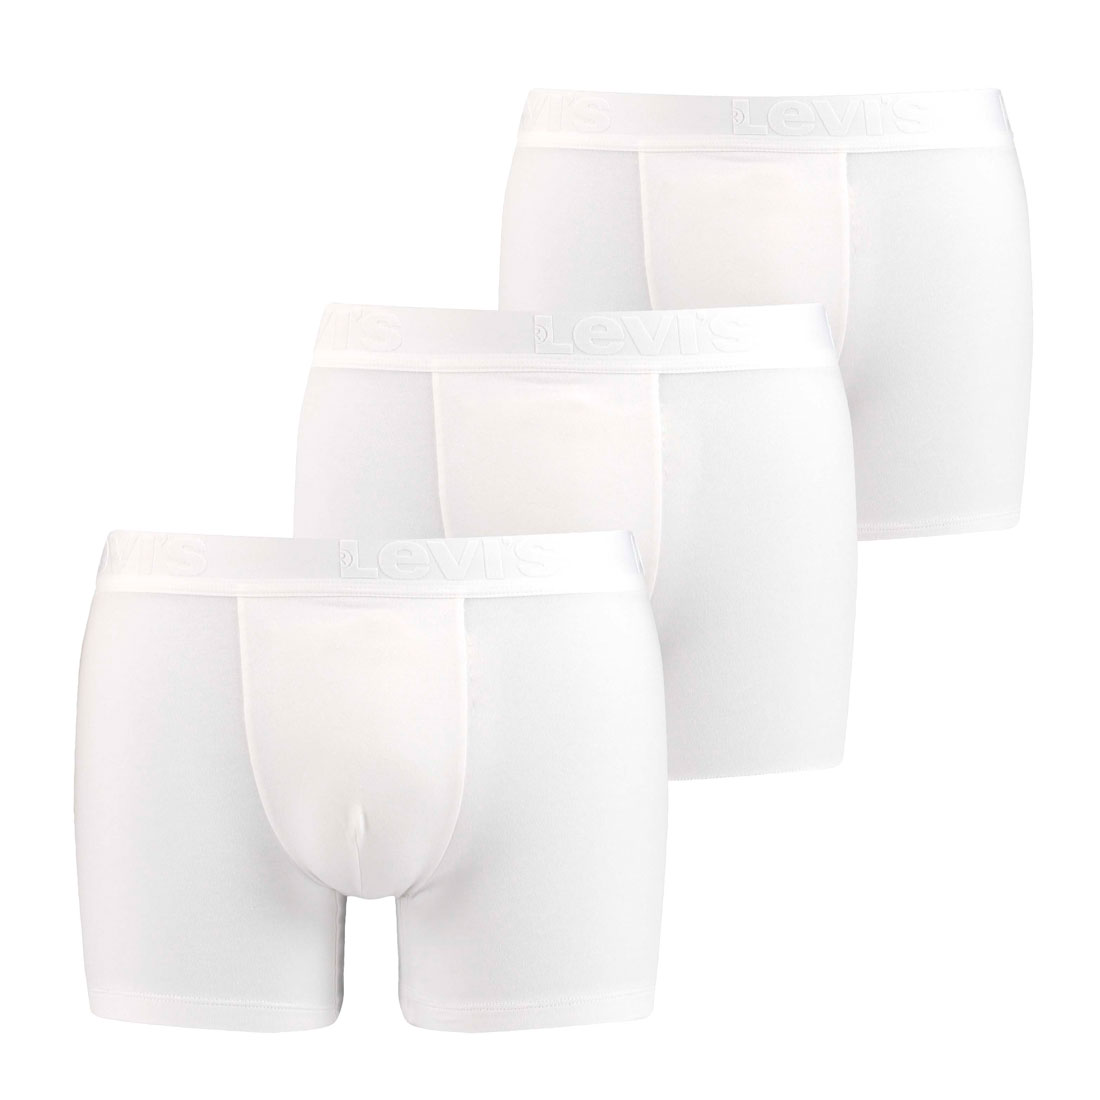 3er Pack Levis Men Premium Boxer Brief Boxershorts Herren Unterhose Pant Unterwäsche XL, White von Levi's